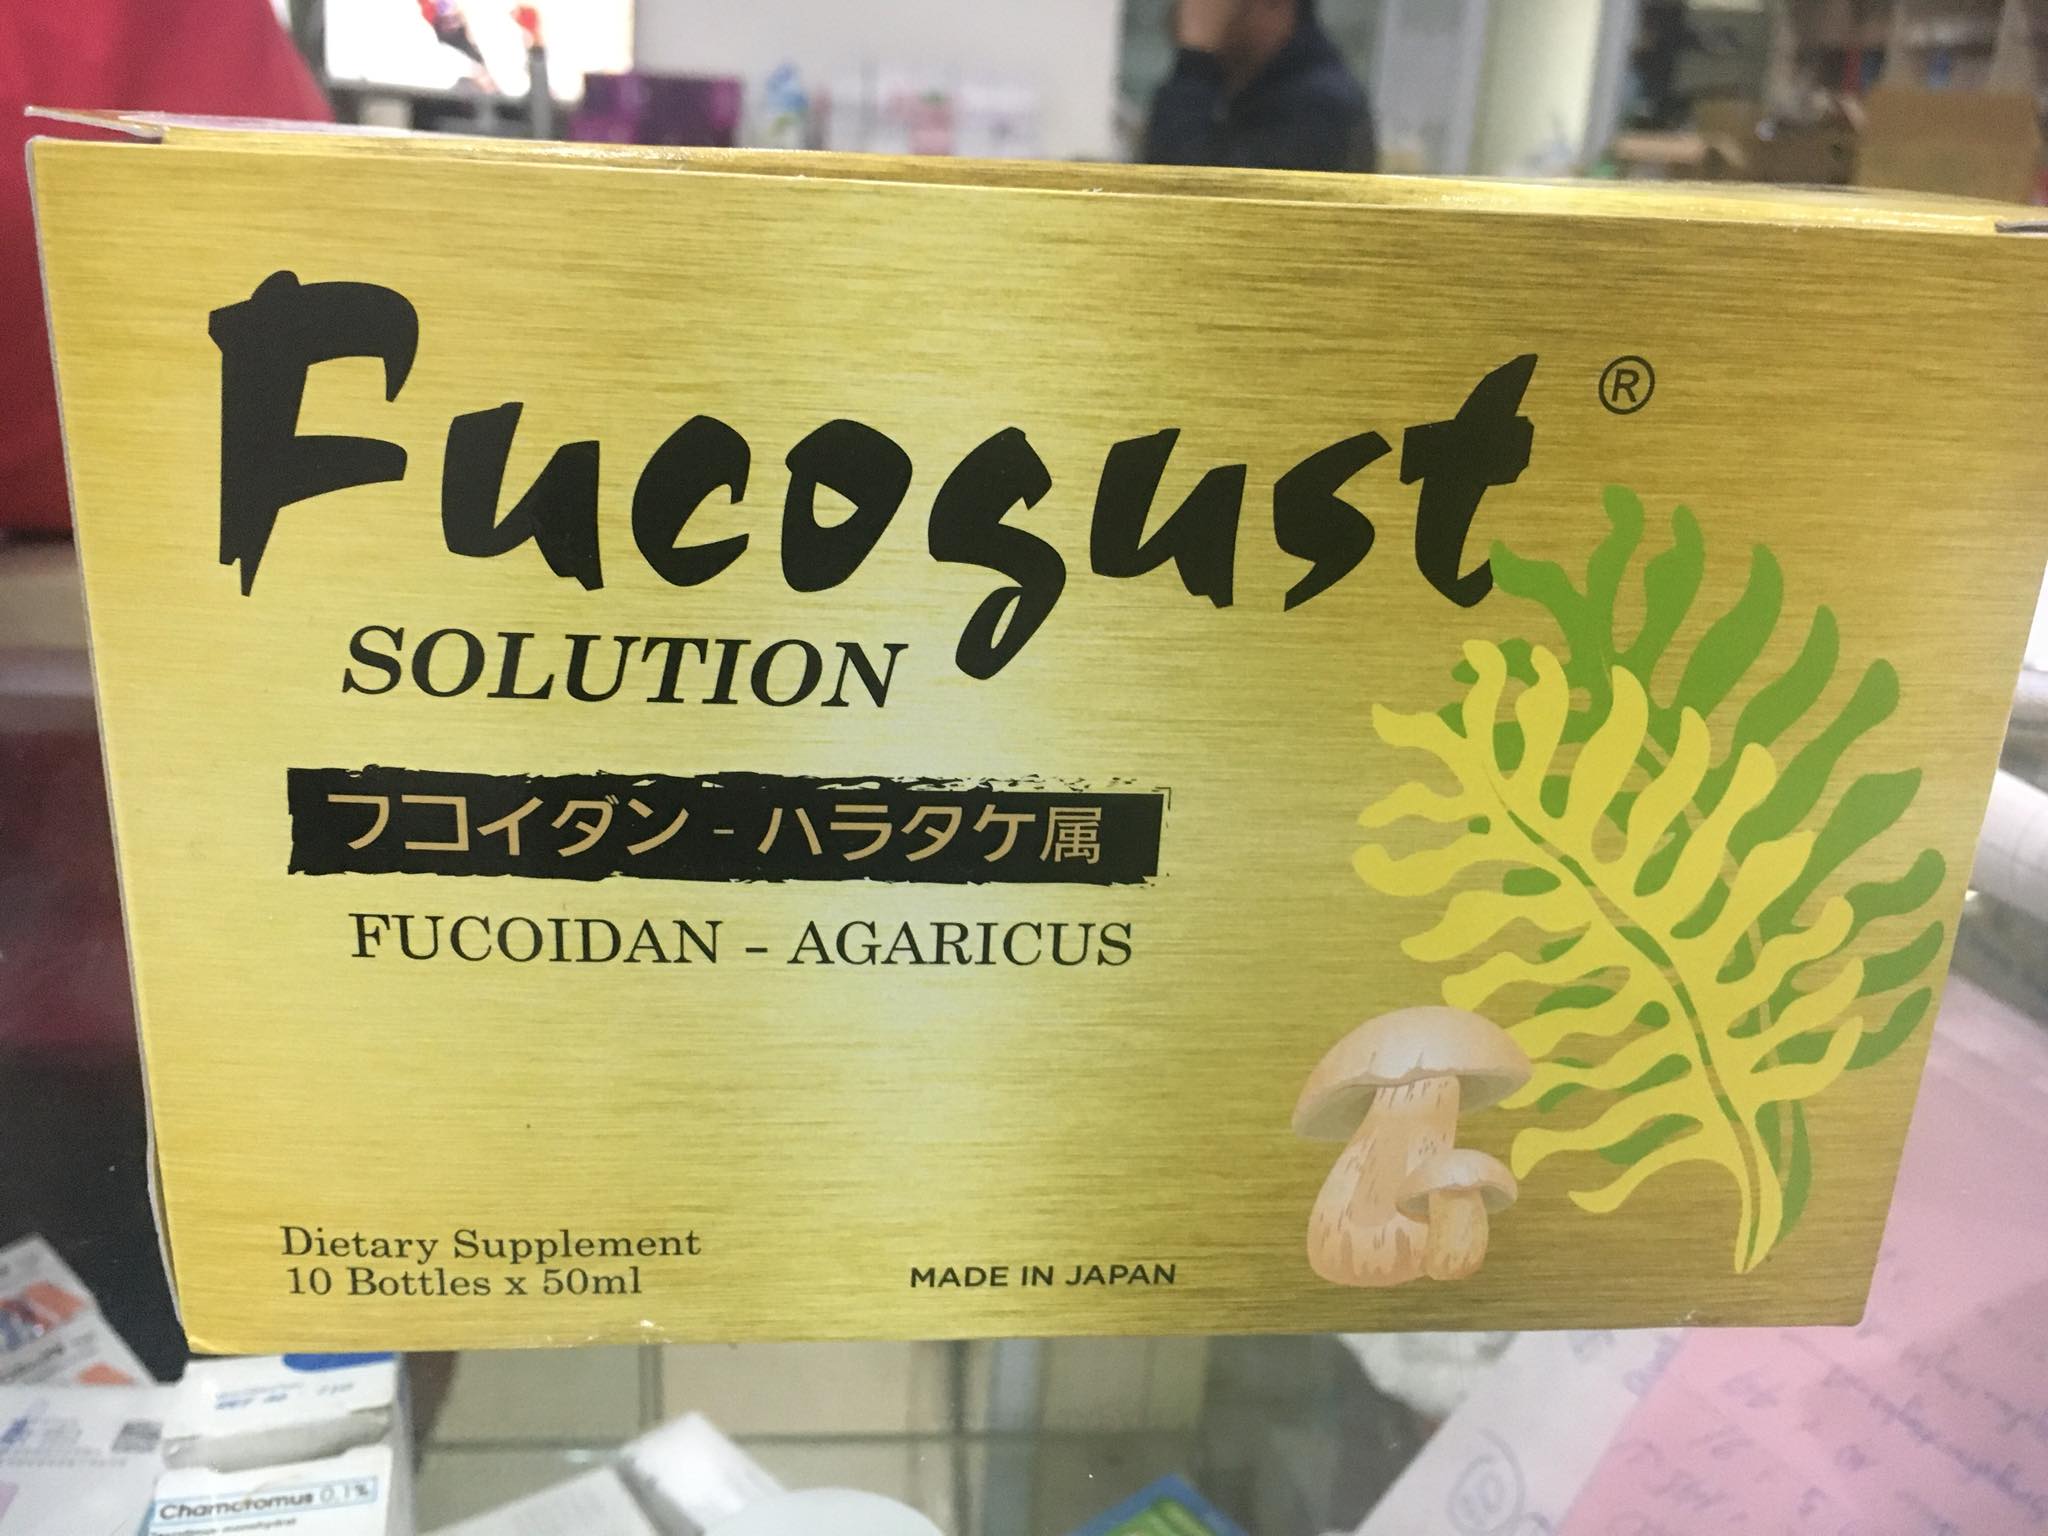 Fucogust nước